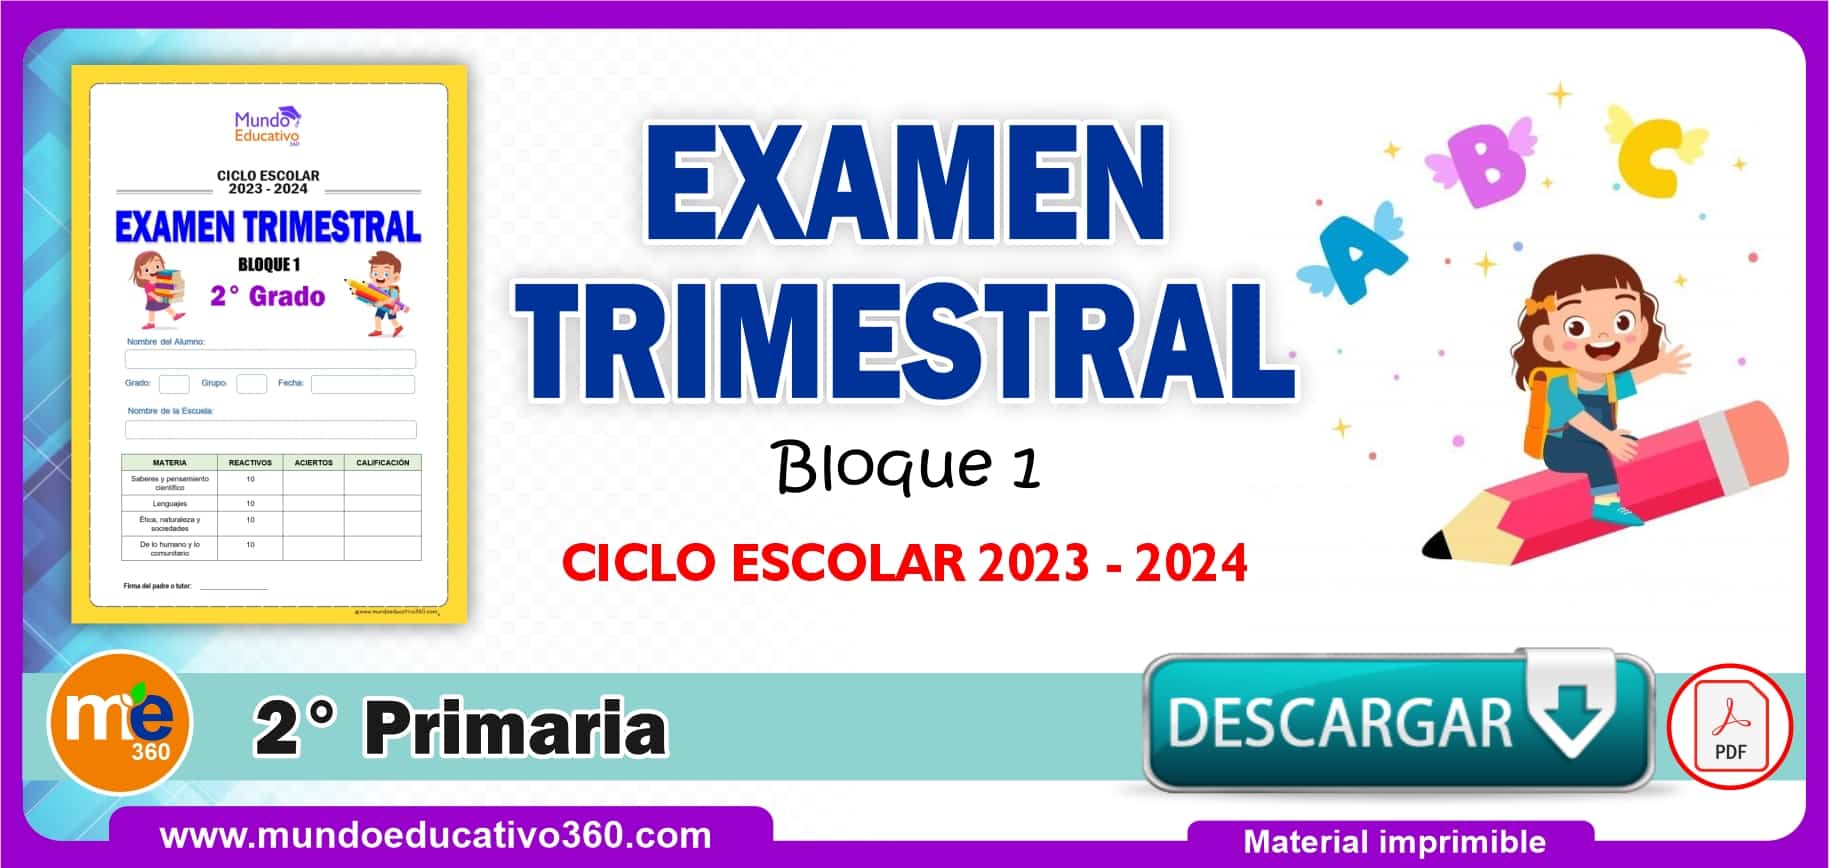 EXAMEN TRIMESTRAL 2° Primaria (Bloque 1) Ciclo 2023 – 2024